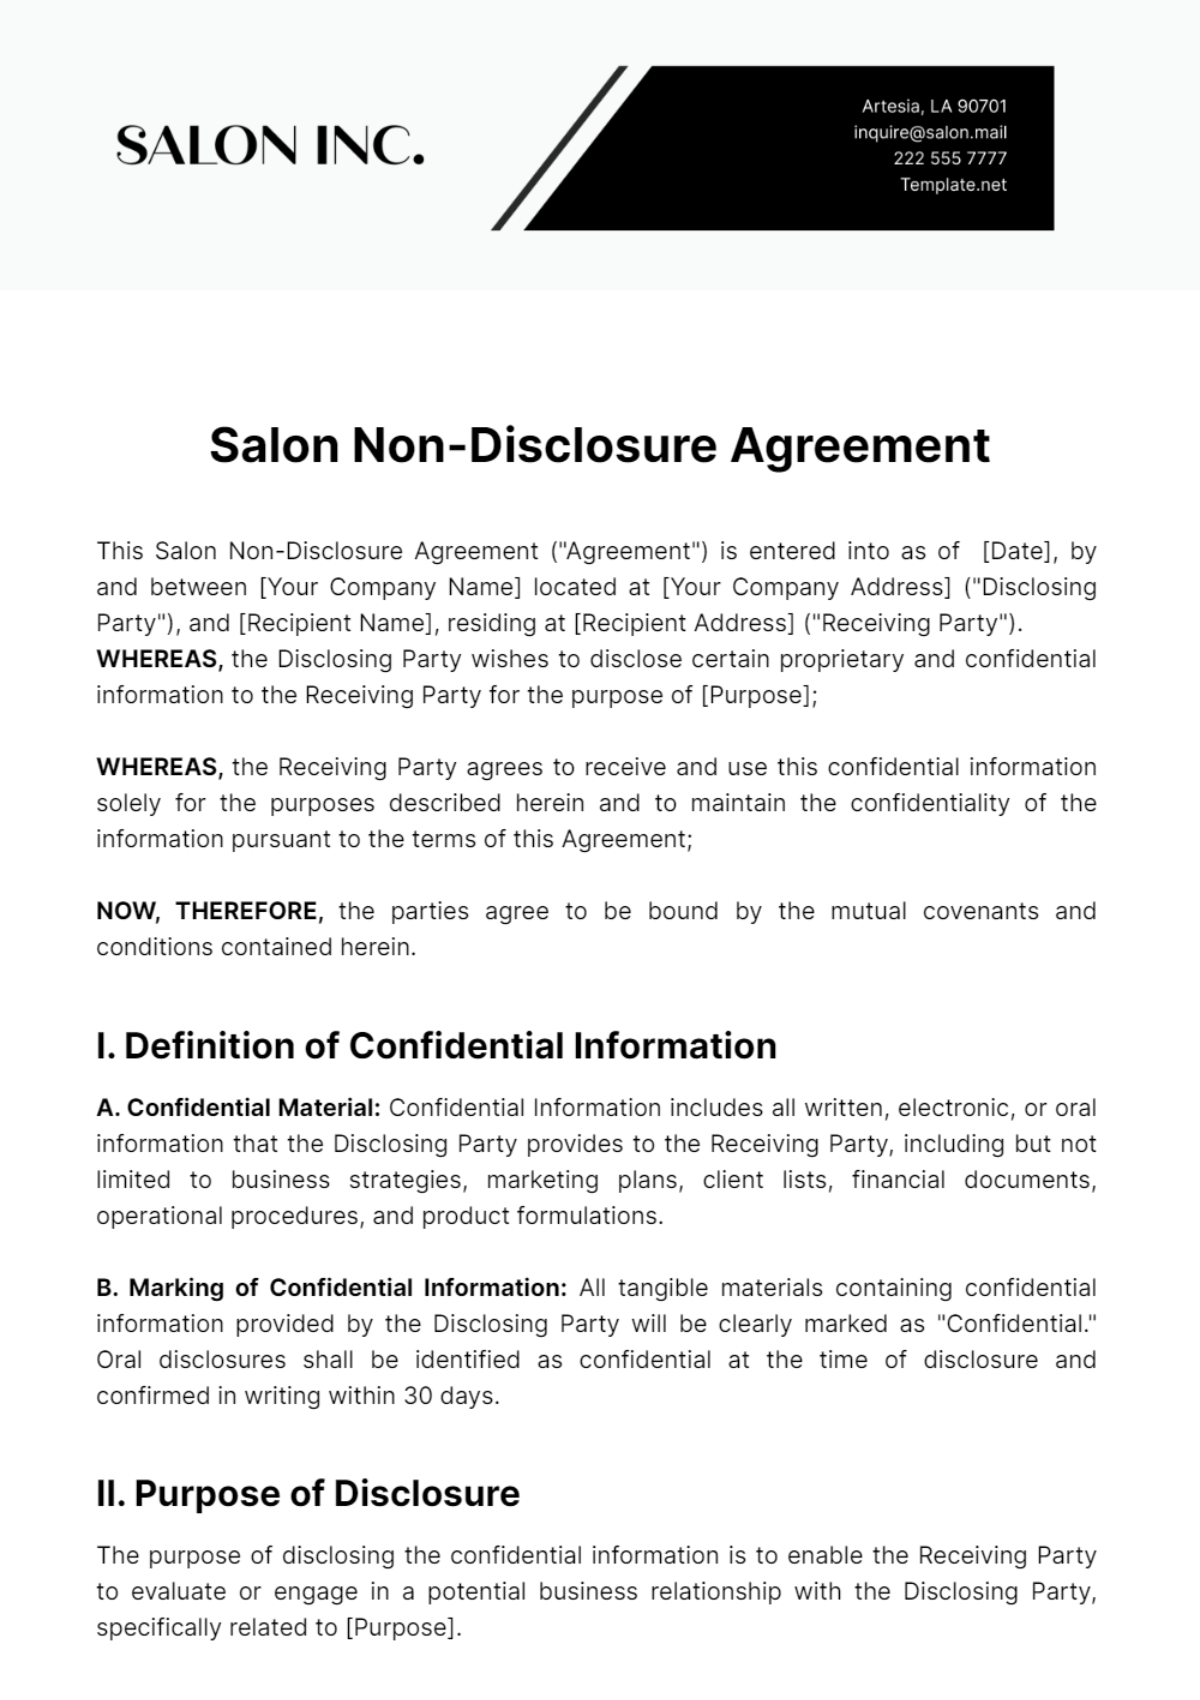 Salon Non-Disclosure Agreement Template